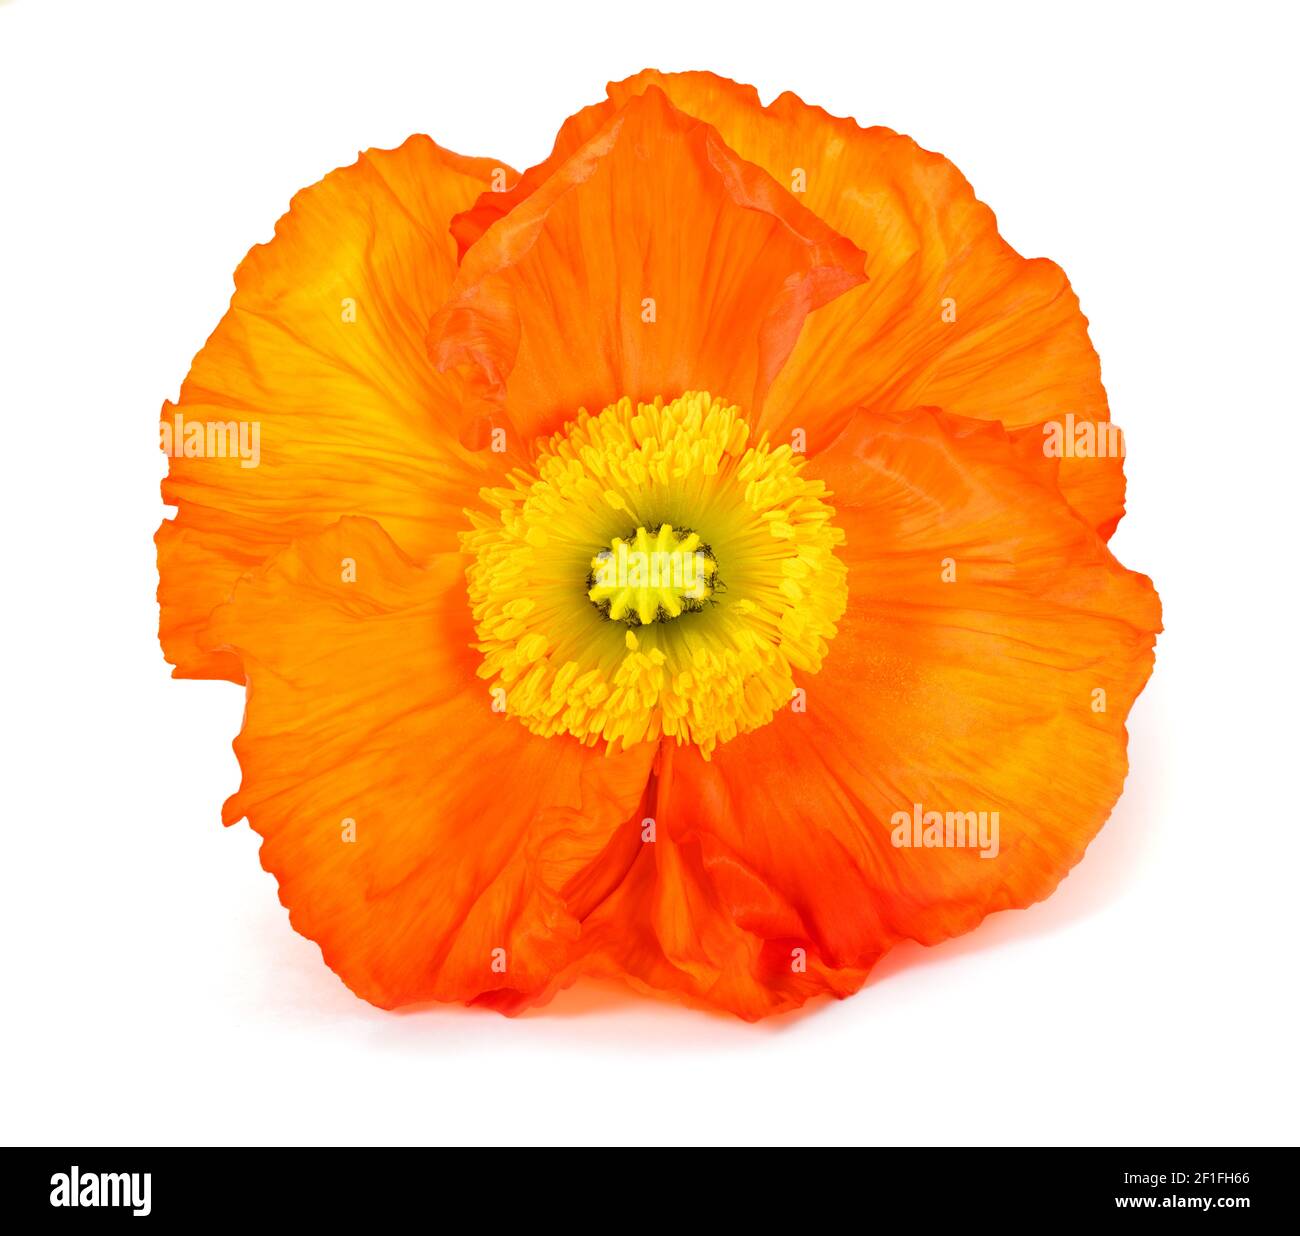 Orange poppy flower isolated on white background Stock Photo